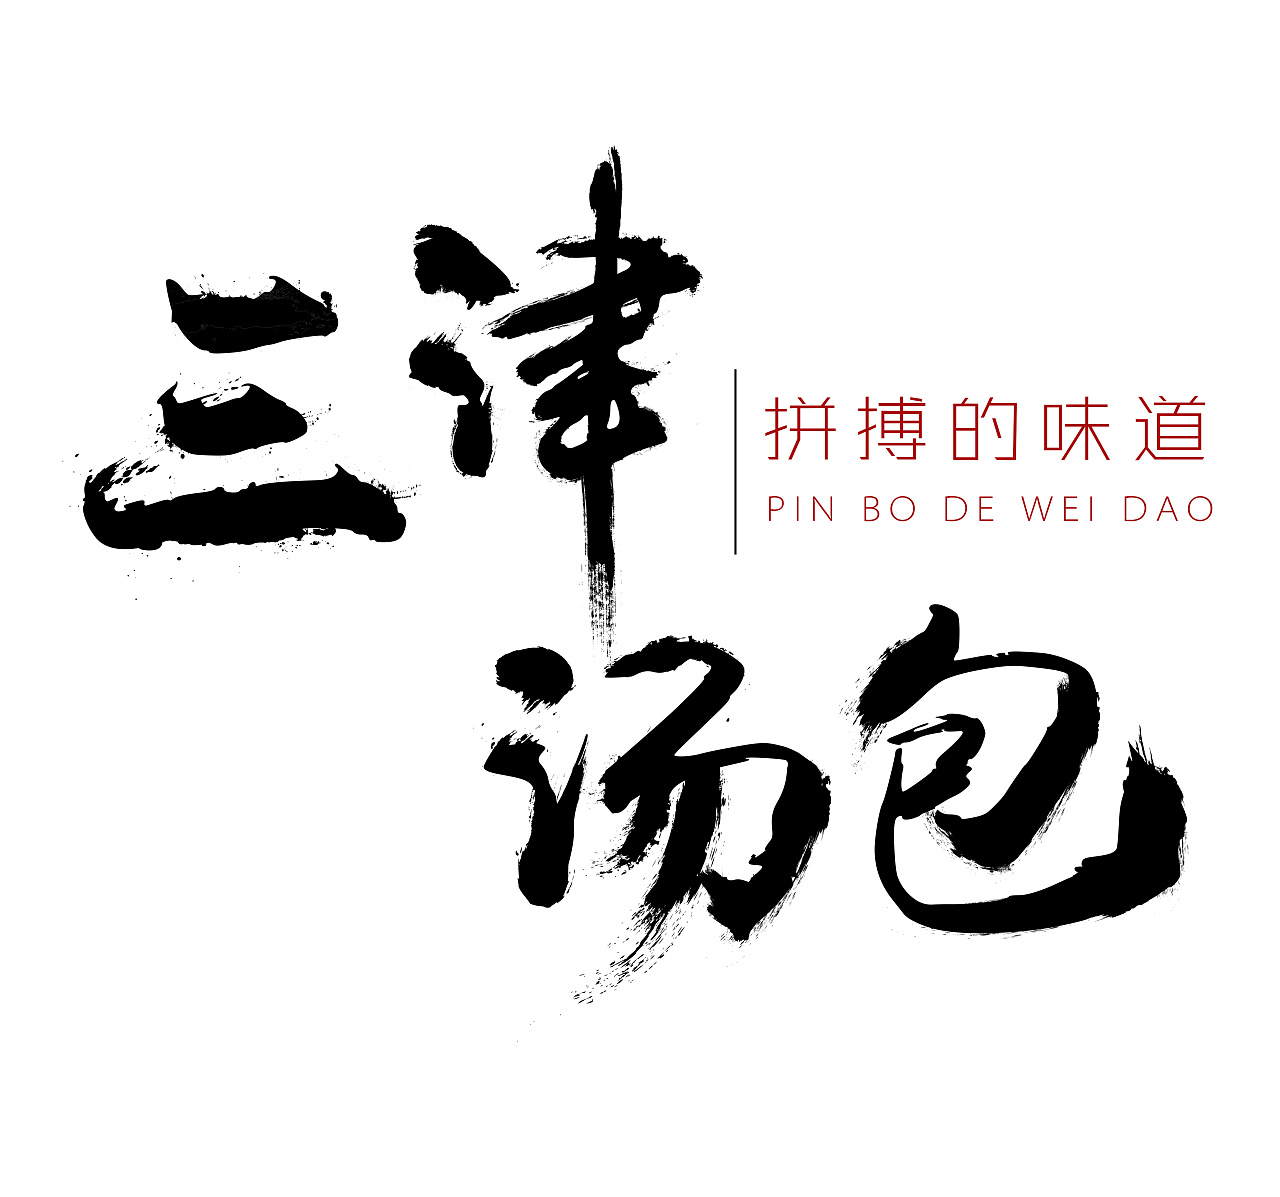 天津灌汤包logo图片图片